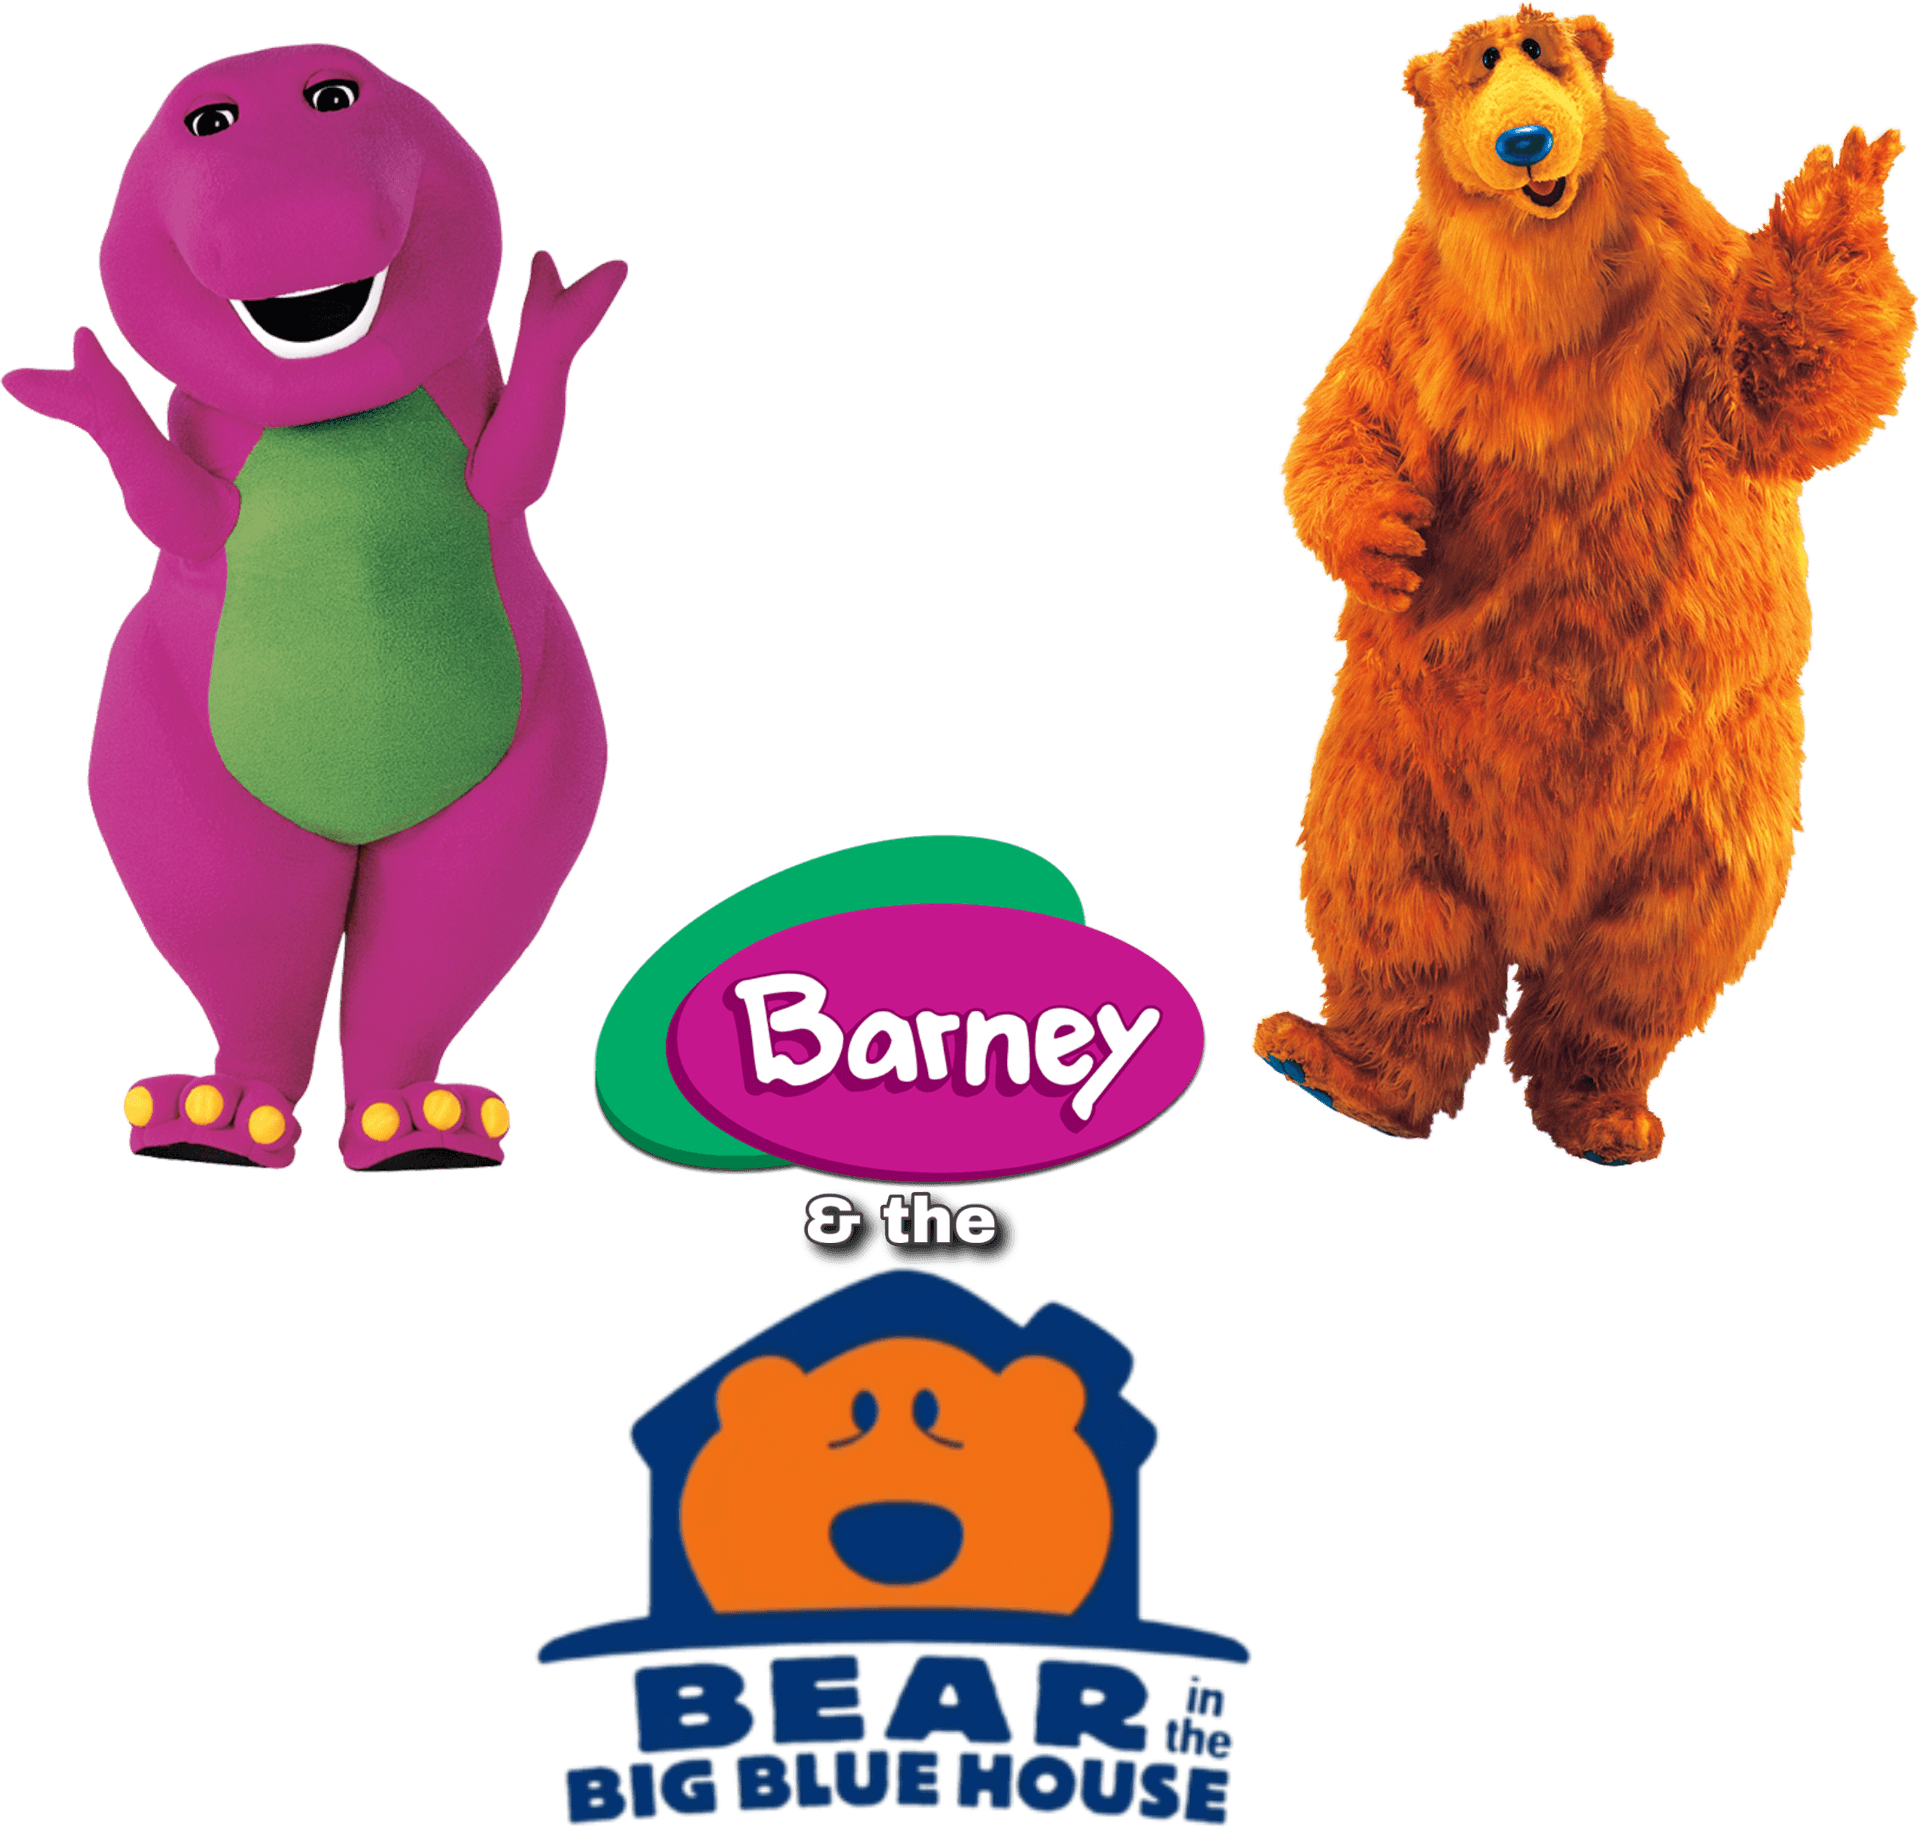 Barneyand Bear T V Characters PNG image